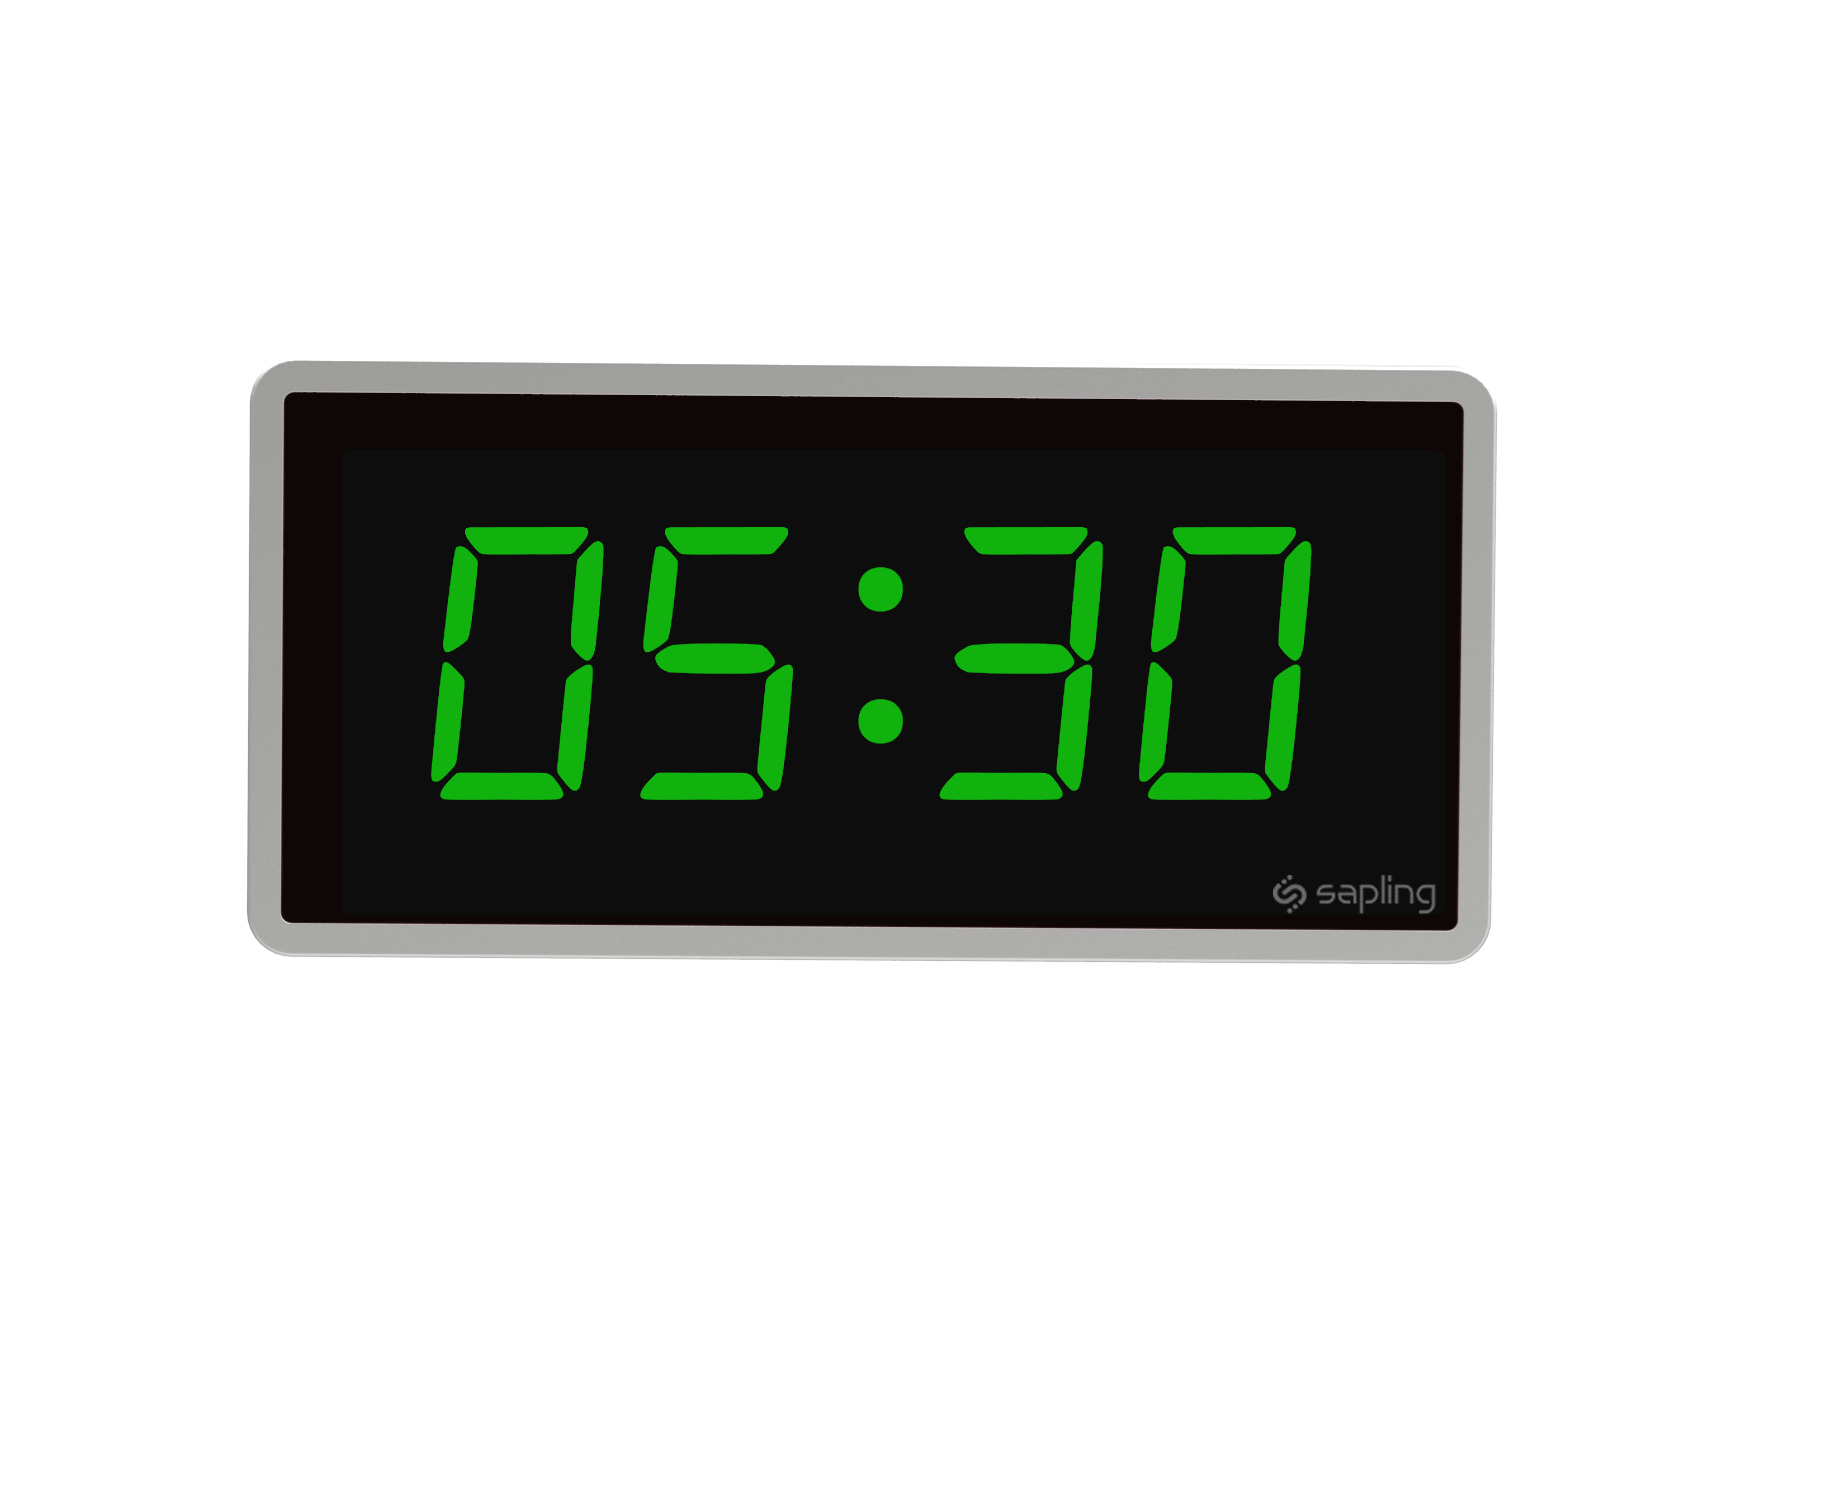 Digital Clocks | Digital Synchronized Clock Systems by Sapling ...